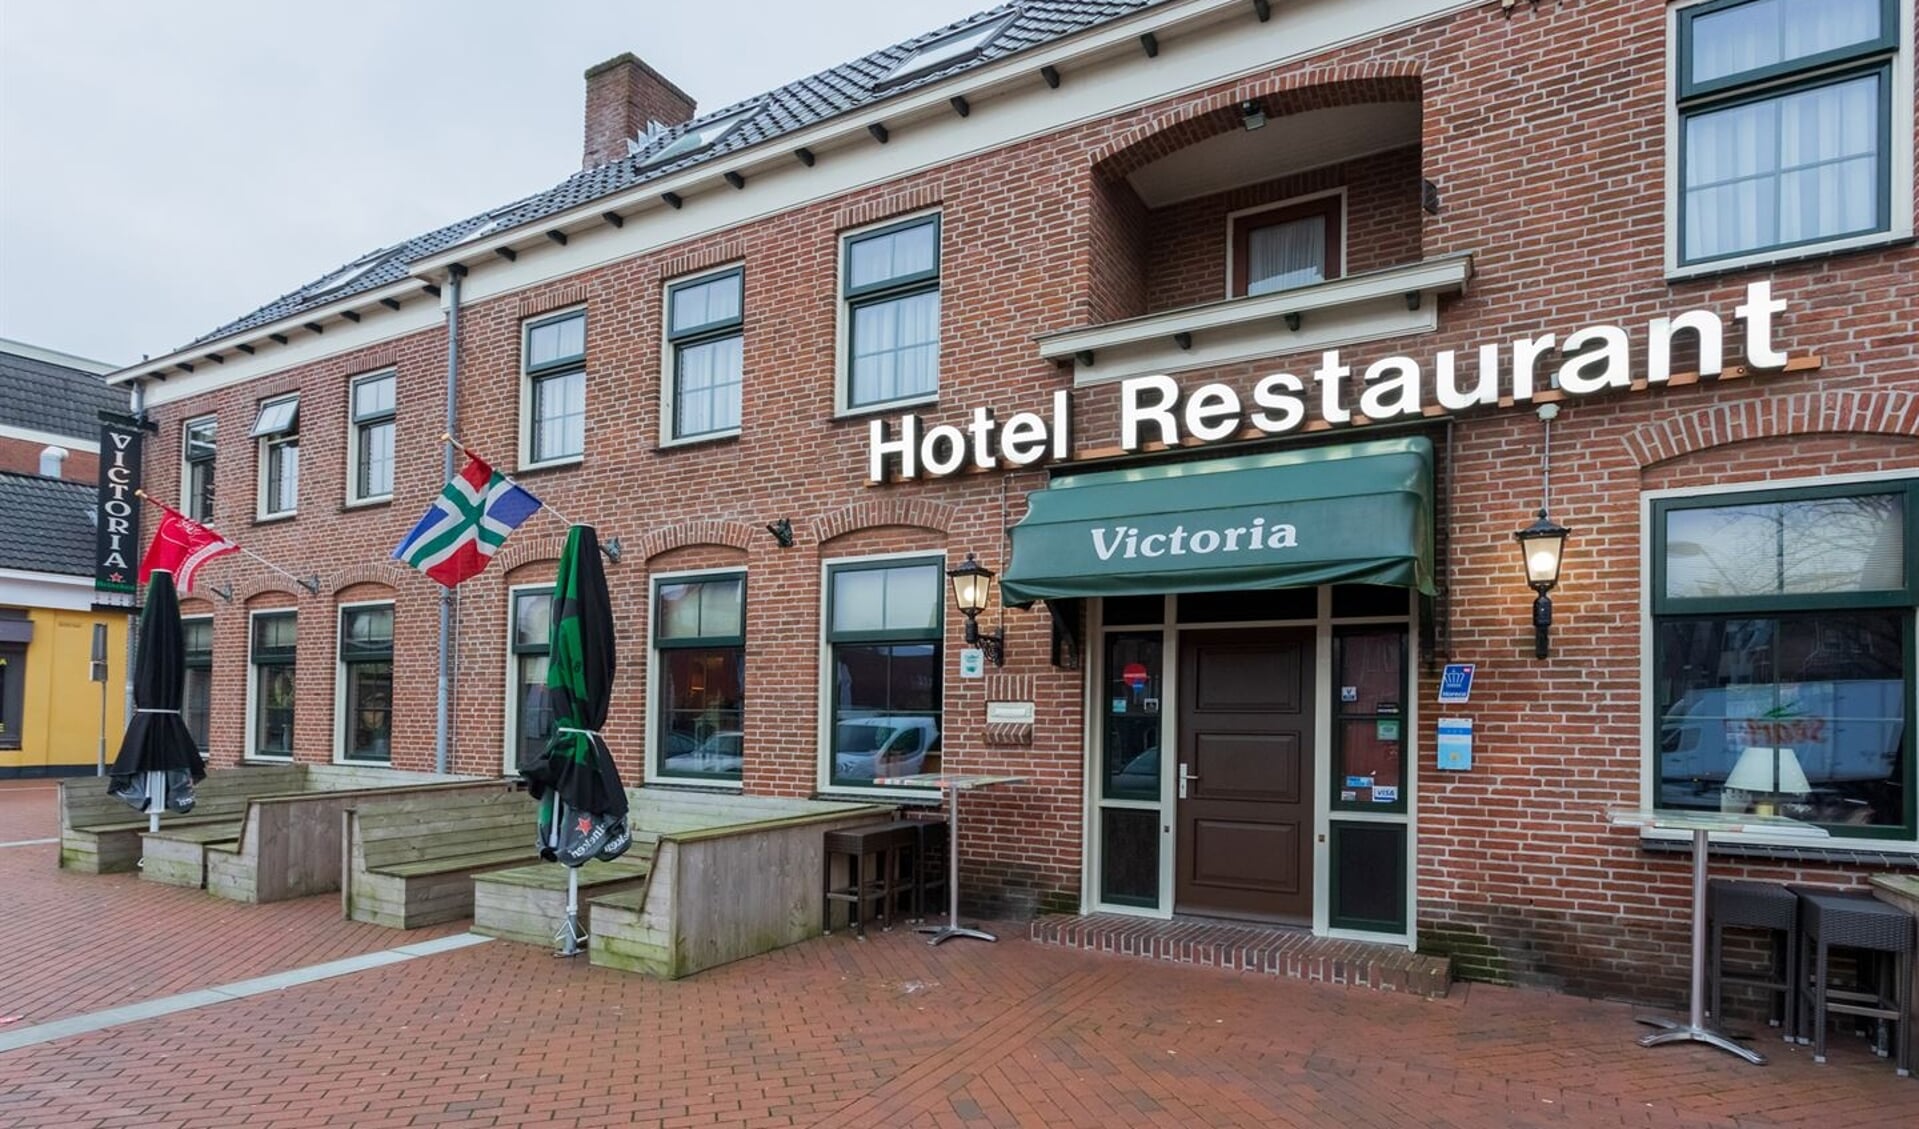 Hotel Victoria in Winschoten.